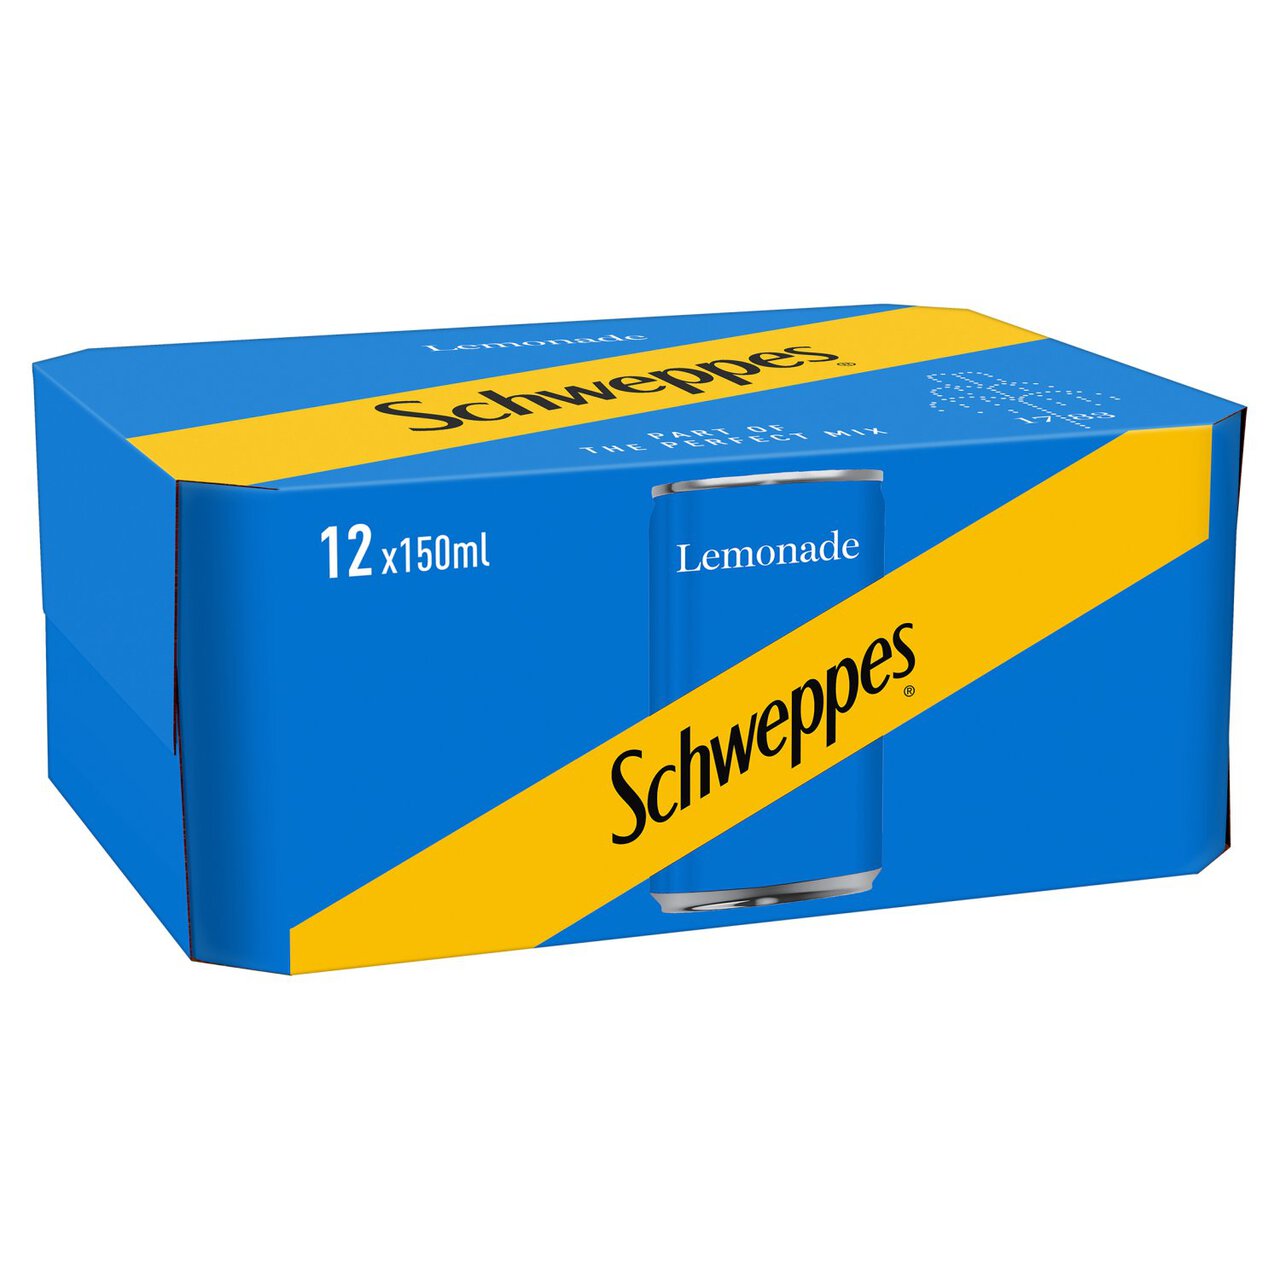 Schweppes Lemonade 12 x 150ml